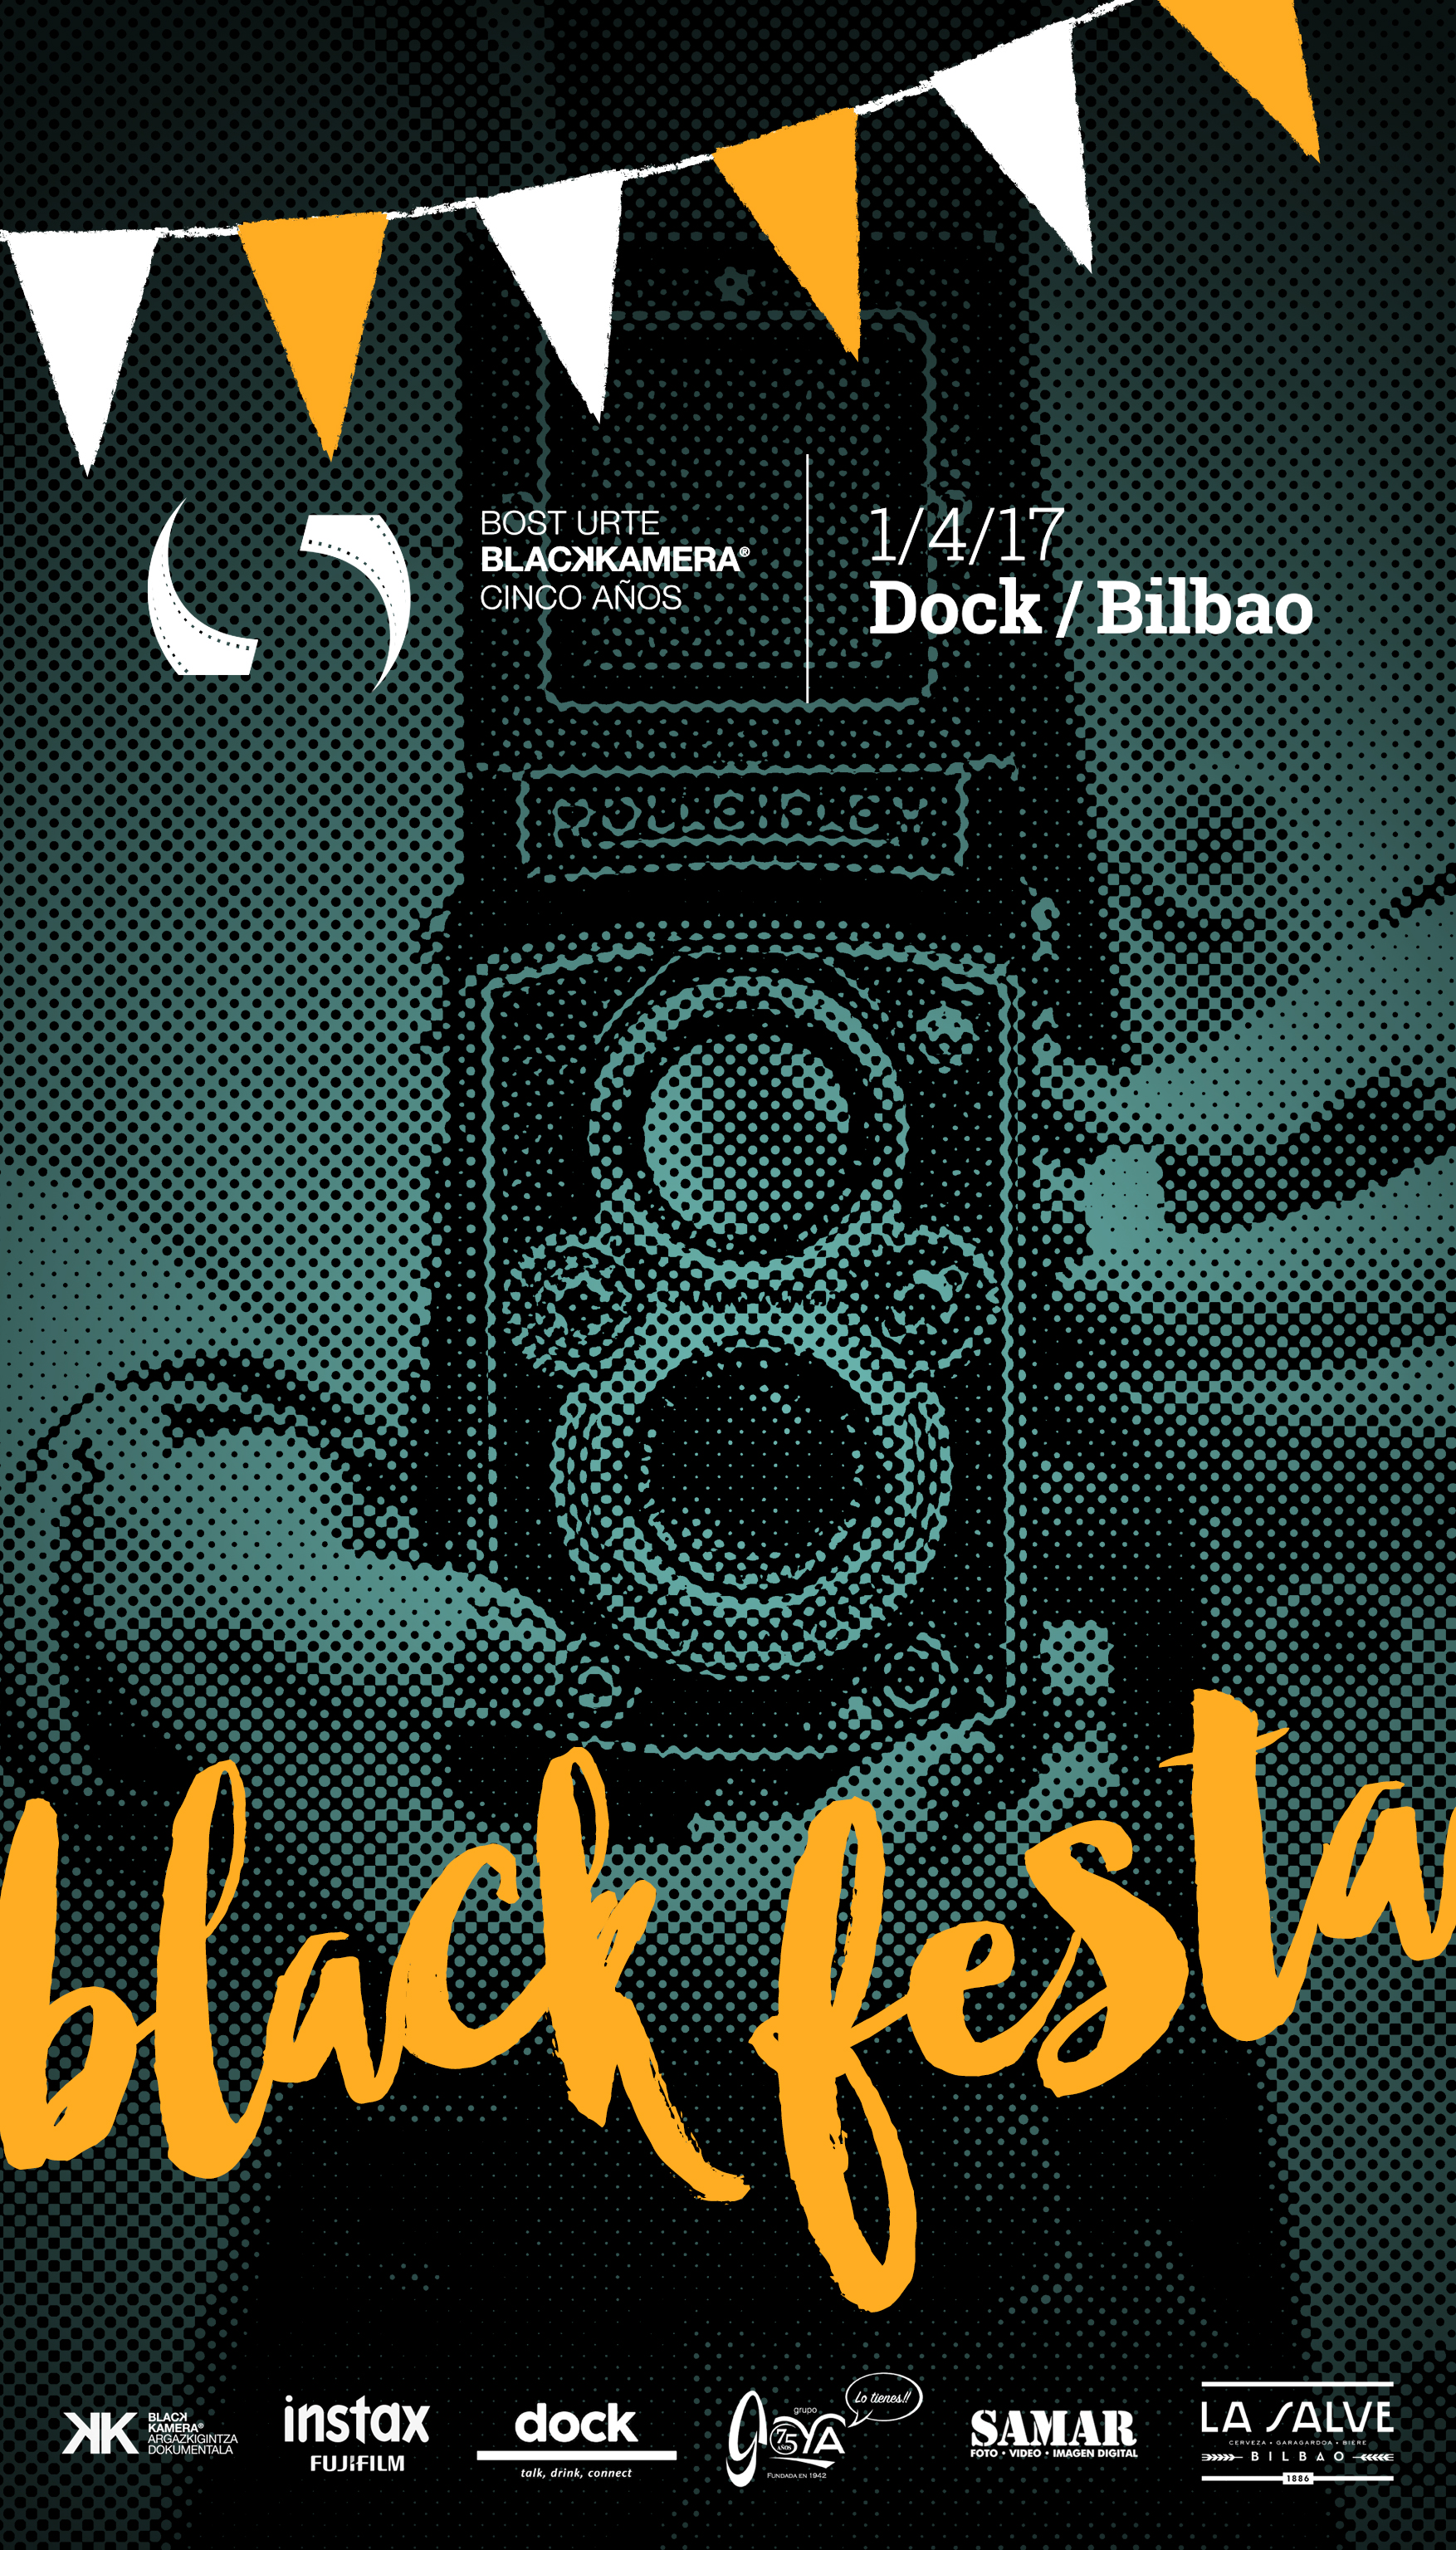 ¡#Blackfesta!